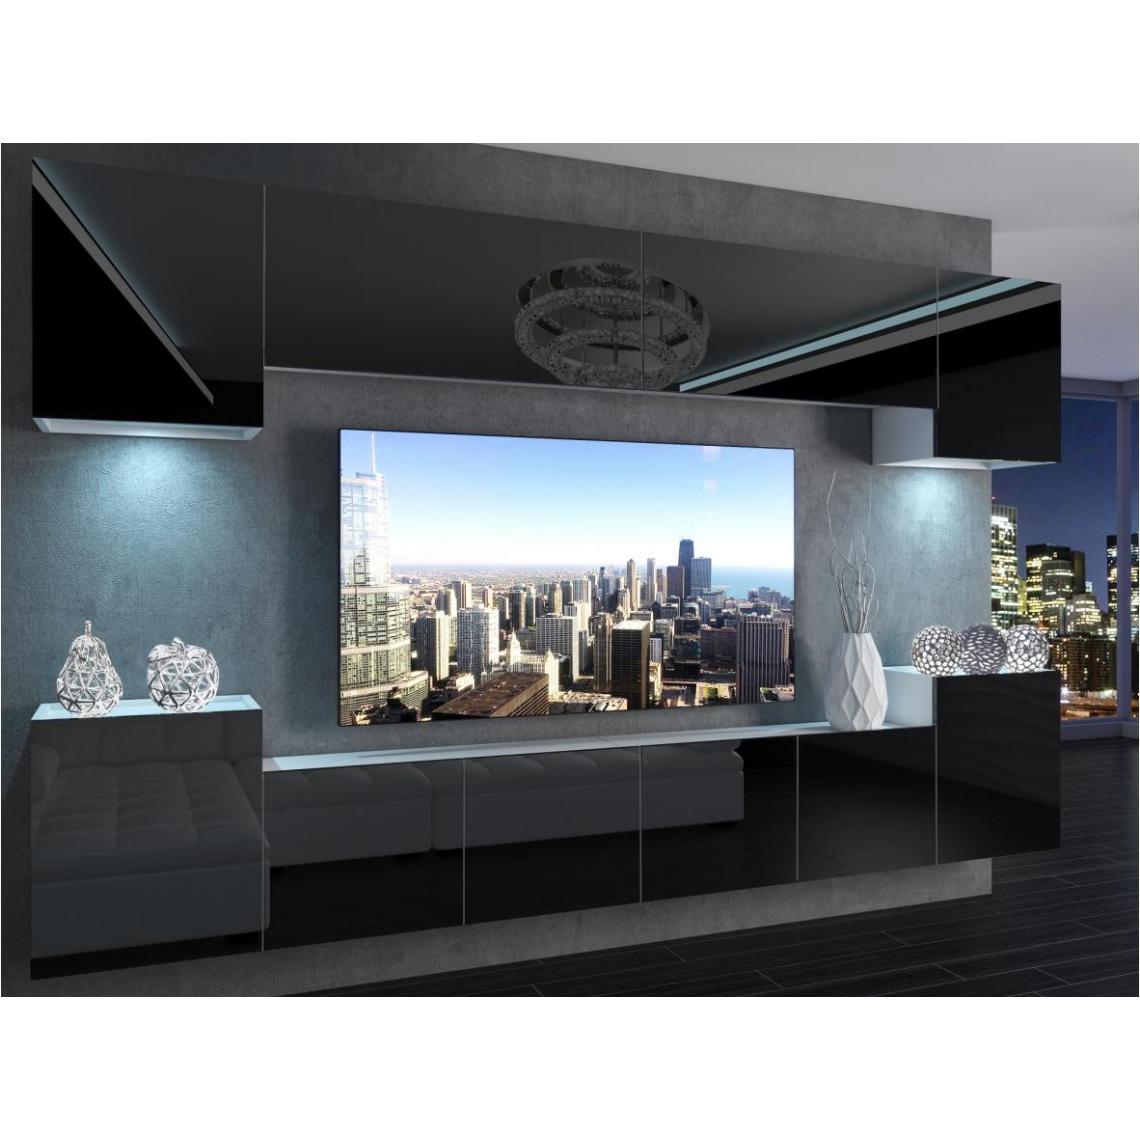 Hucoco - AREN - Ensemble meubles TV + LED - Unité murale style moderne - Largeur 300 cm - Mur TV à suspendre finition gloss - Noir - Meubles TV, Hi-Fi